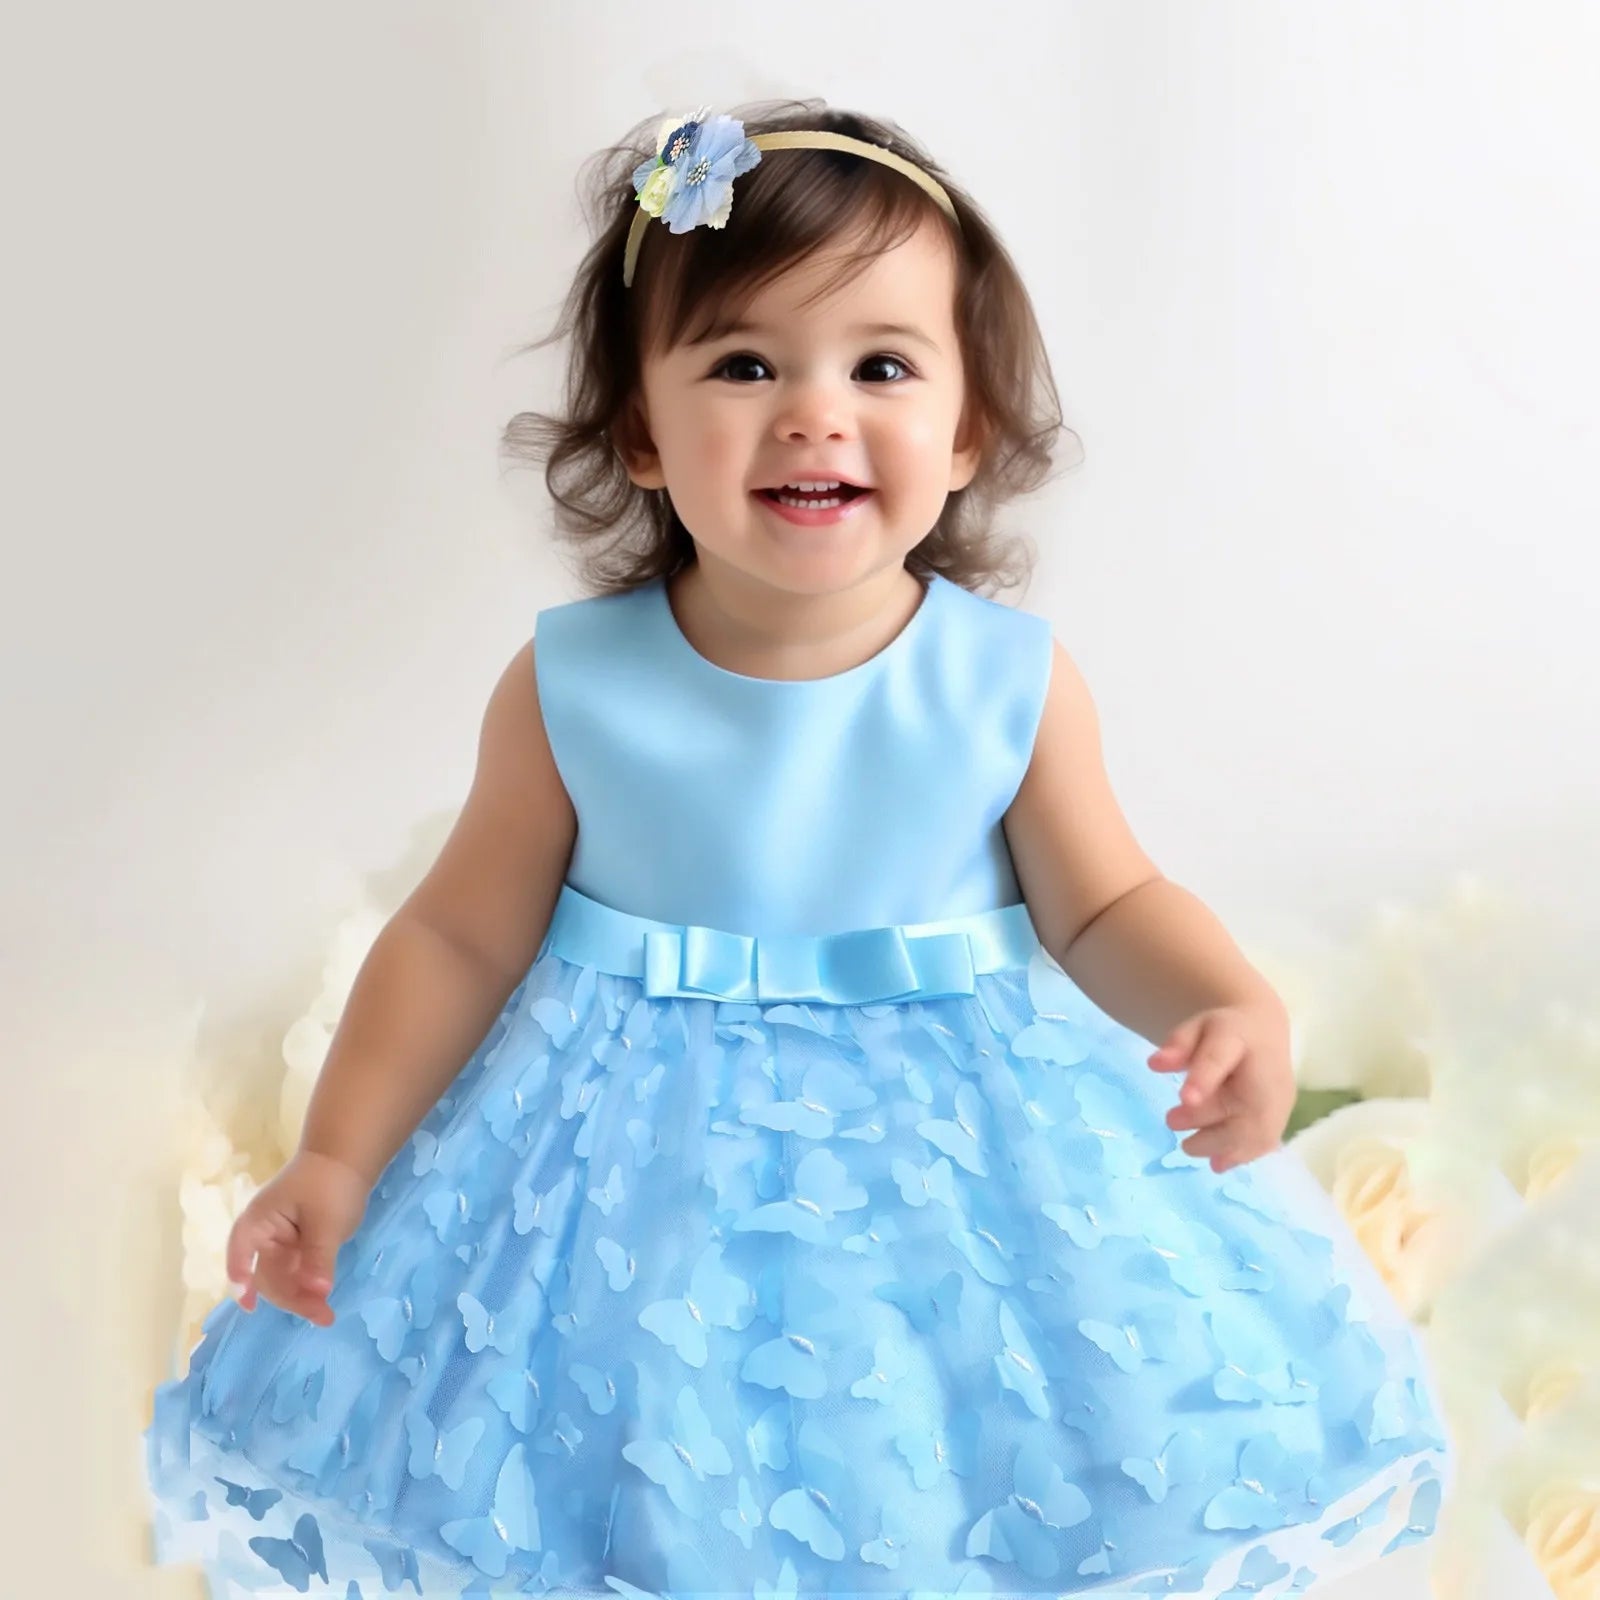 Infant Sleeveless Birthday Party Dress Blue United States by Baby Minaj Cruz